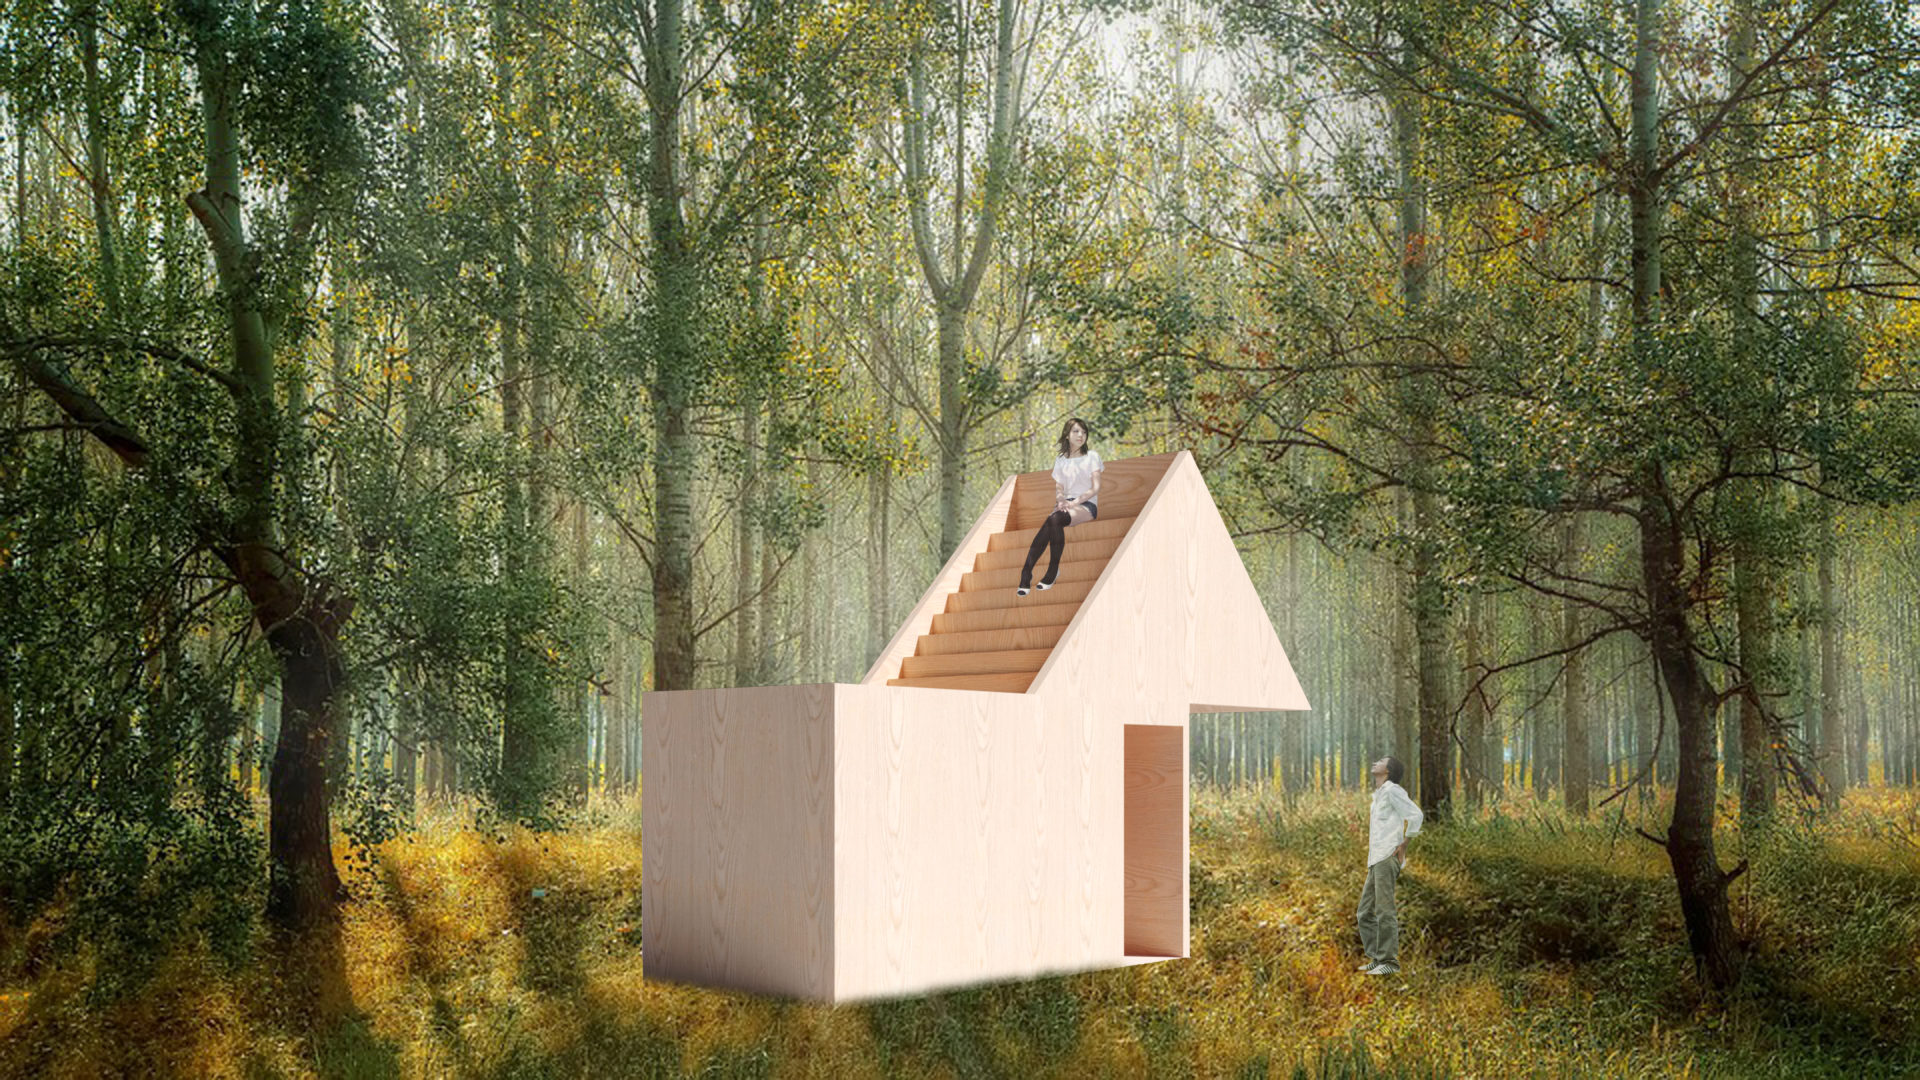 設計した大川家具工業会の小屋 “Sliding Roof” が 「Japan Home & Building Show 2019」に出展されます